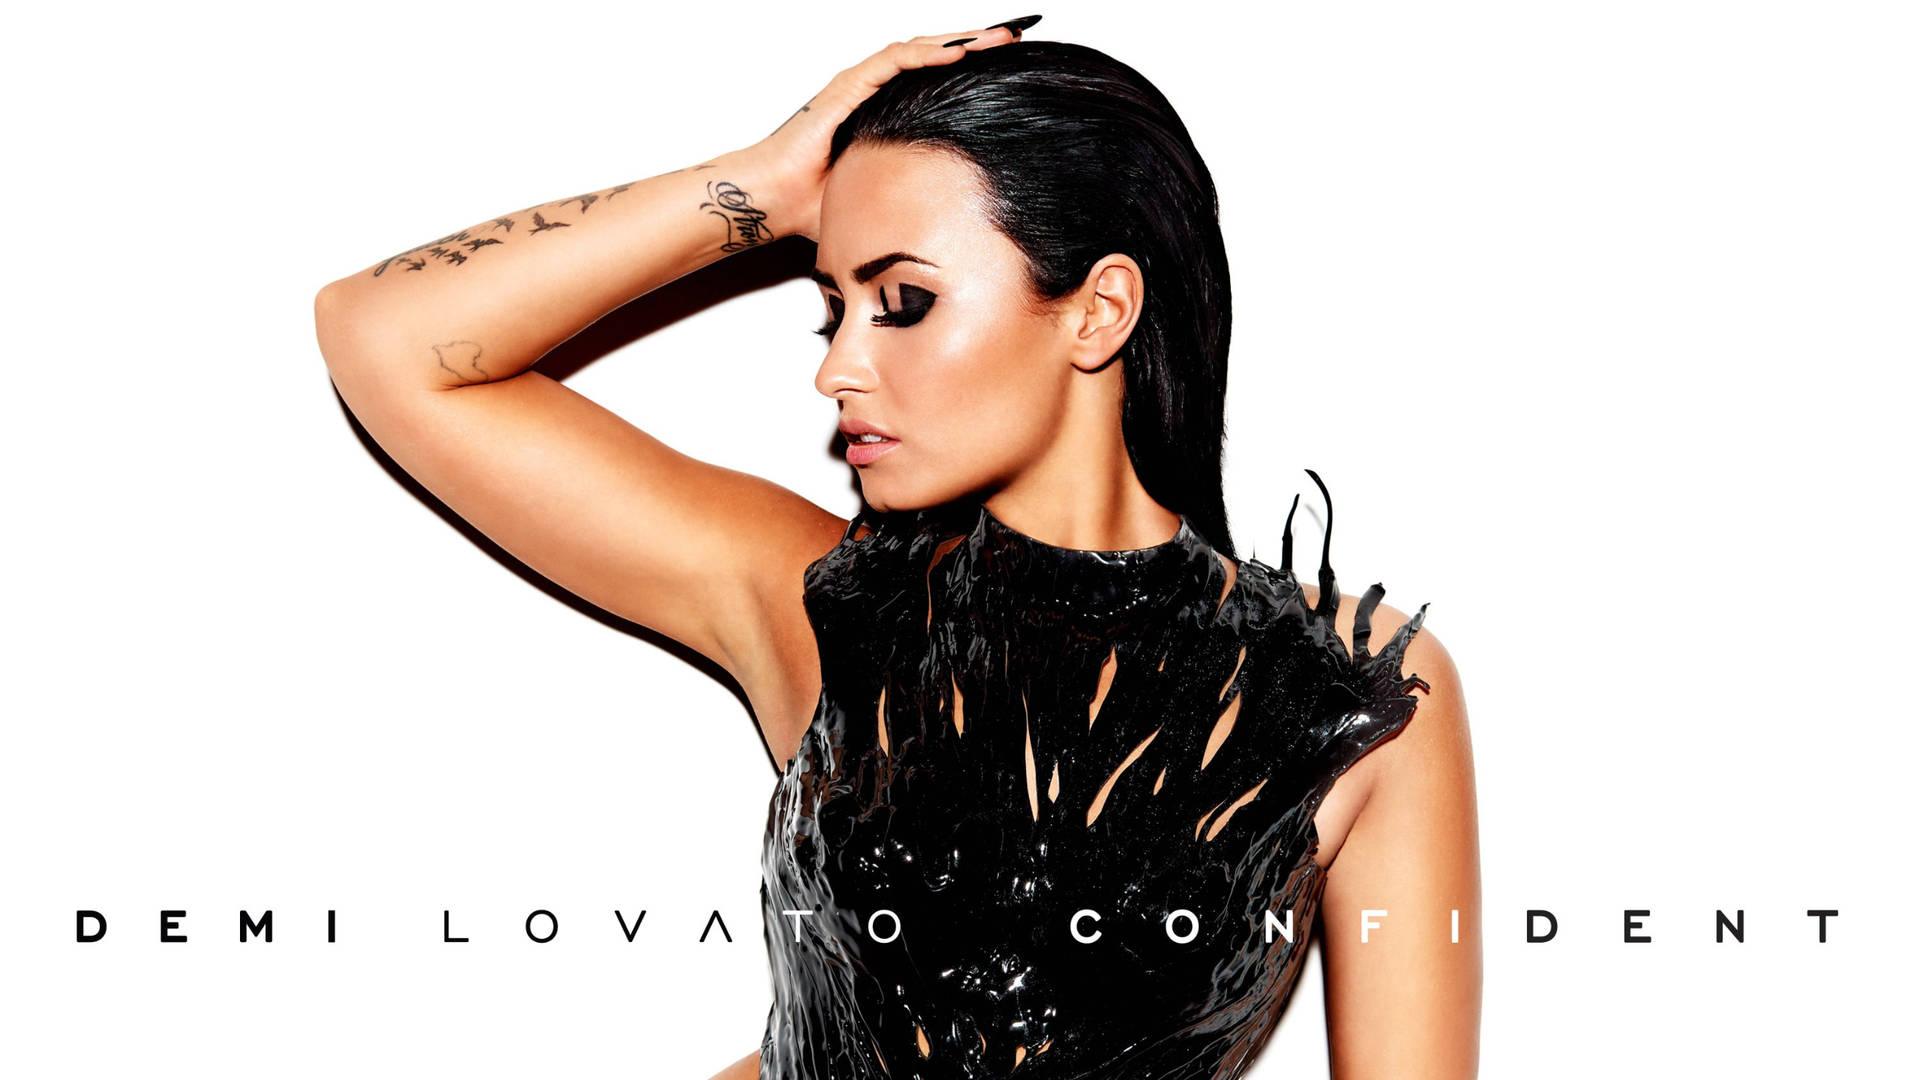 Demi Lovato Confident Wallpaper